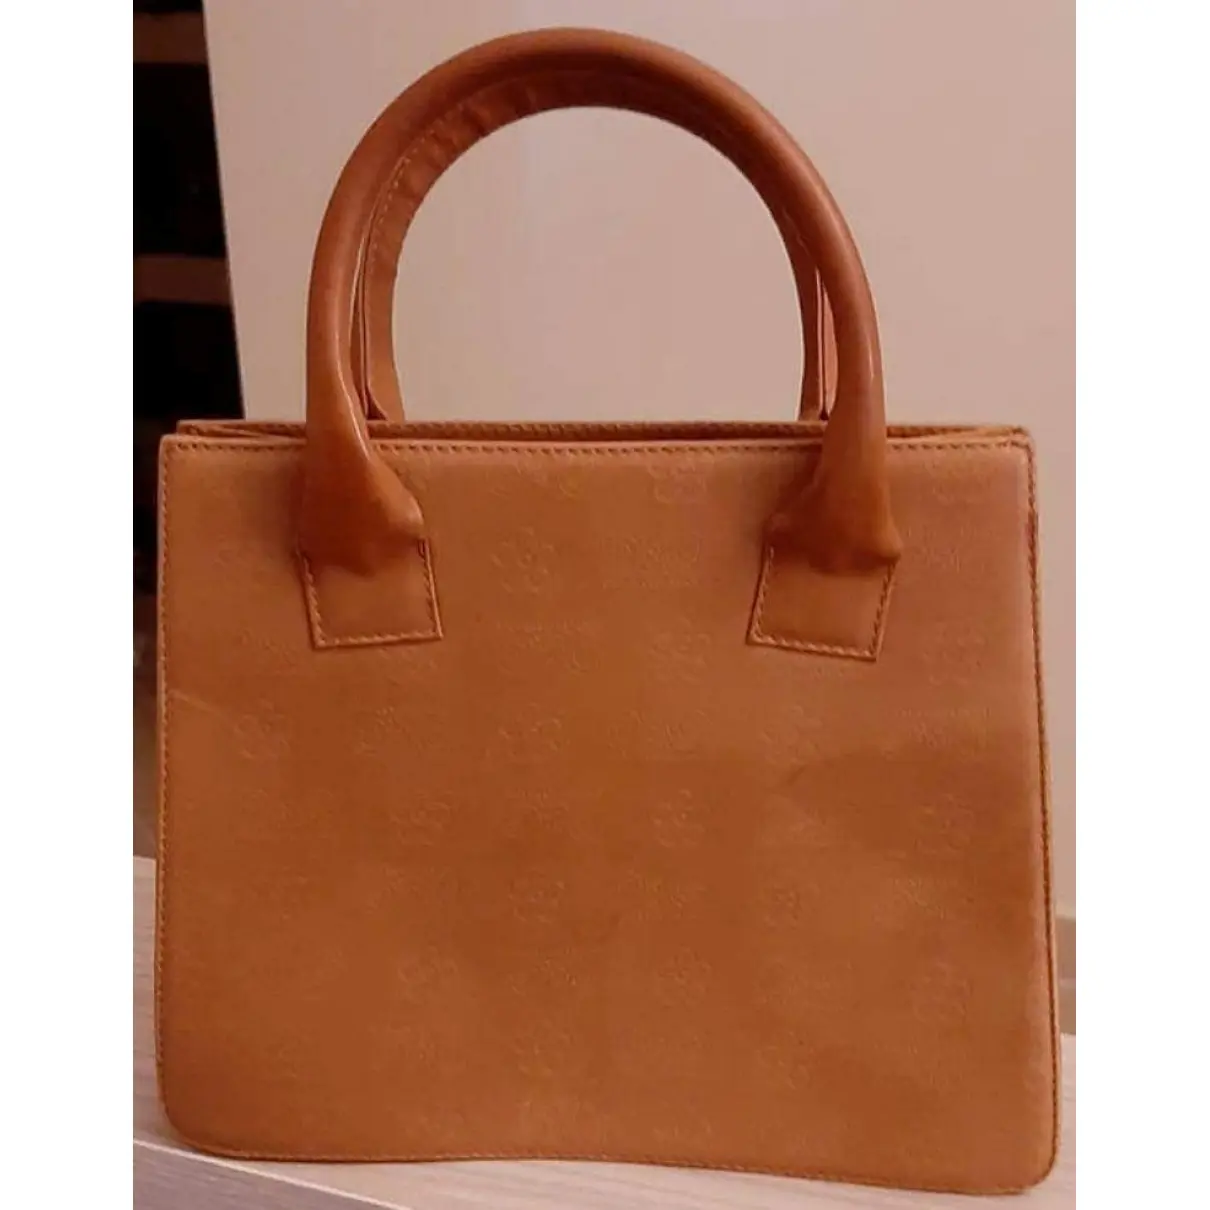 D&G Leather handbag for sale